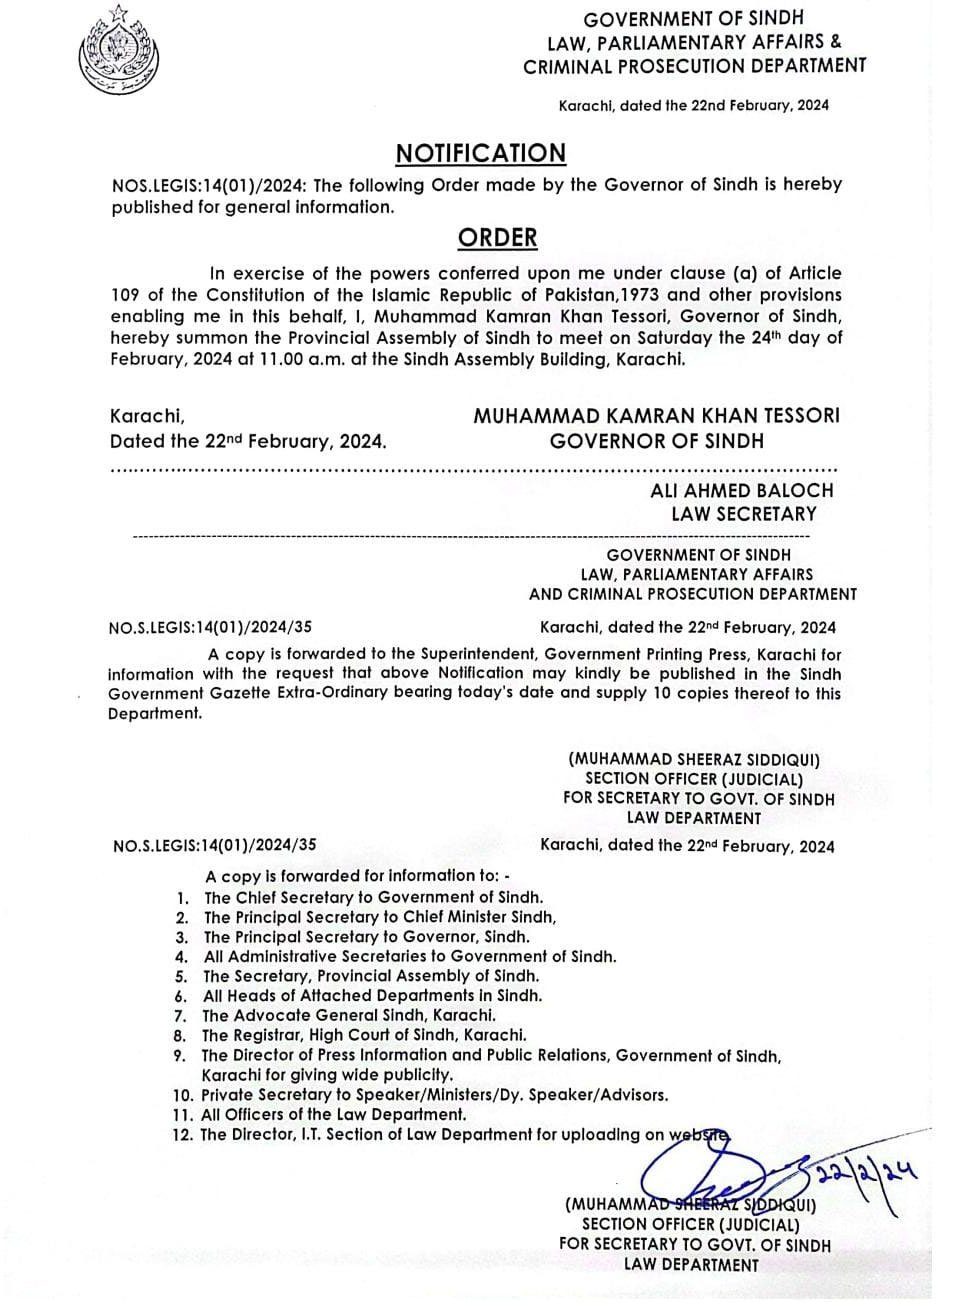 گورنر ٹیسوری نے سندھ اسمبلی کا اجلاس 24 فروری کو طلب کرلیا